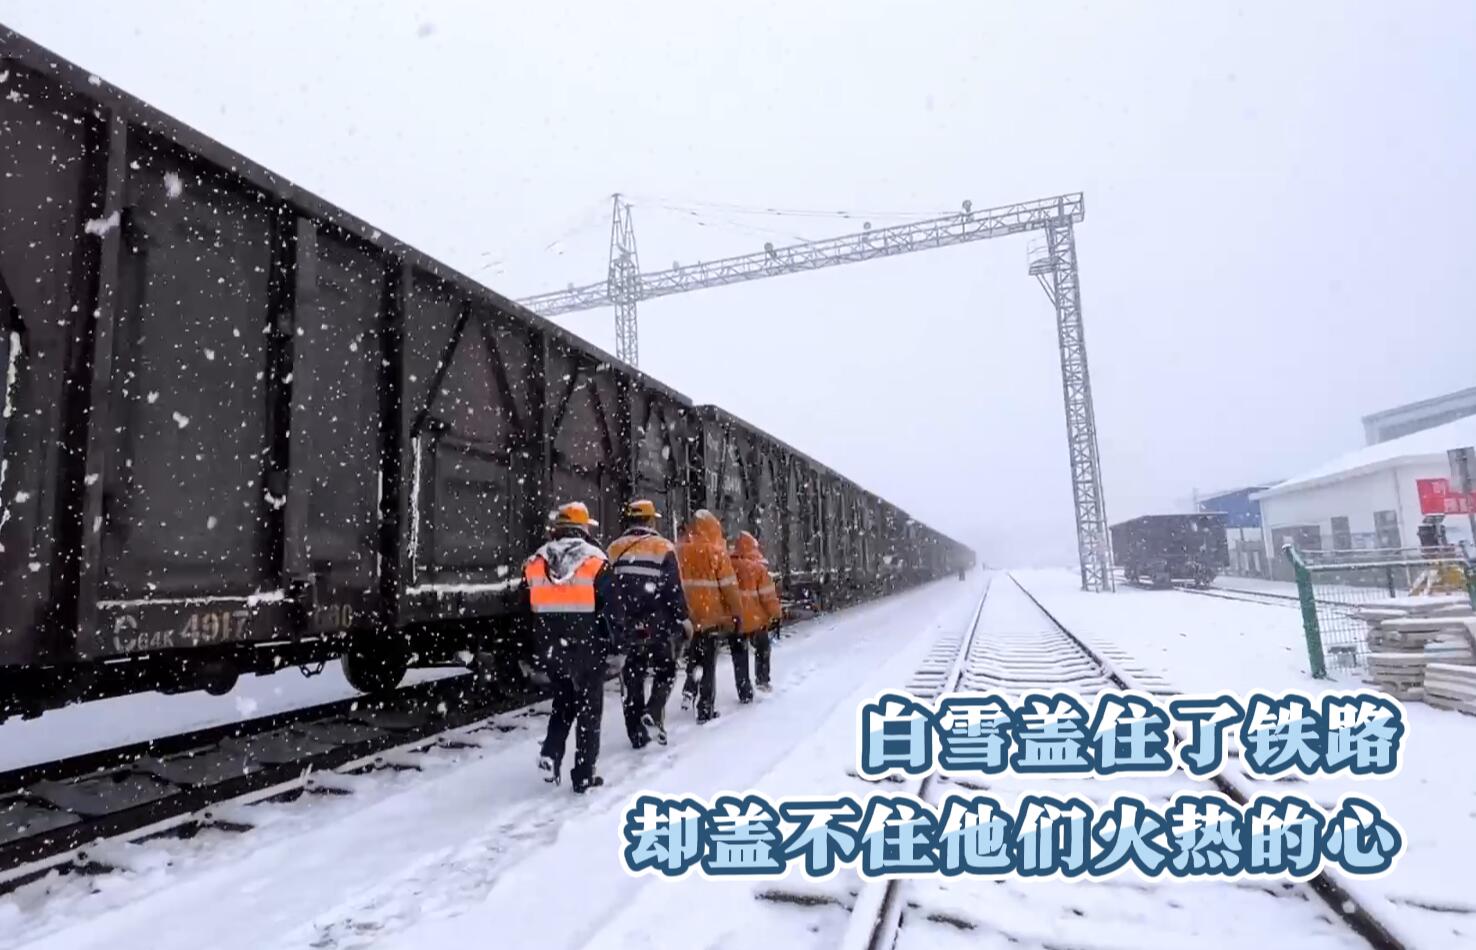 铁运公司微视频《白雪盖住了...